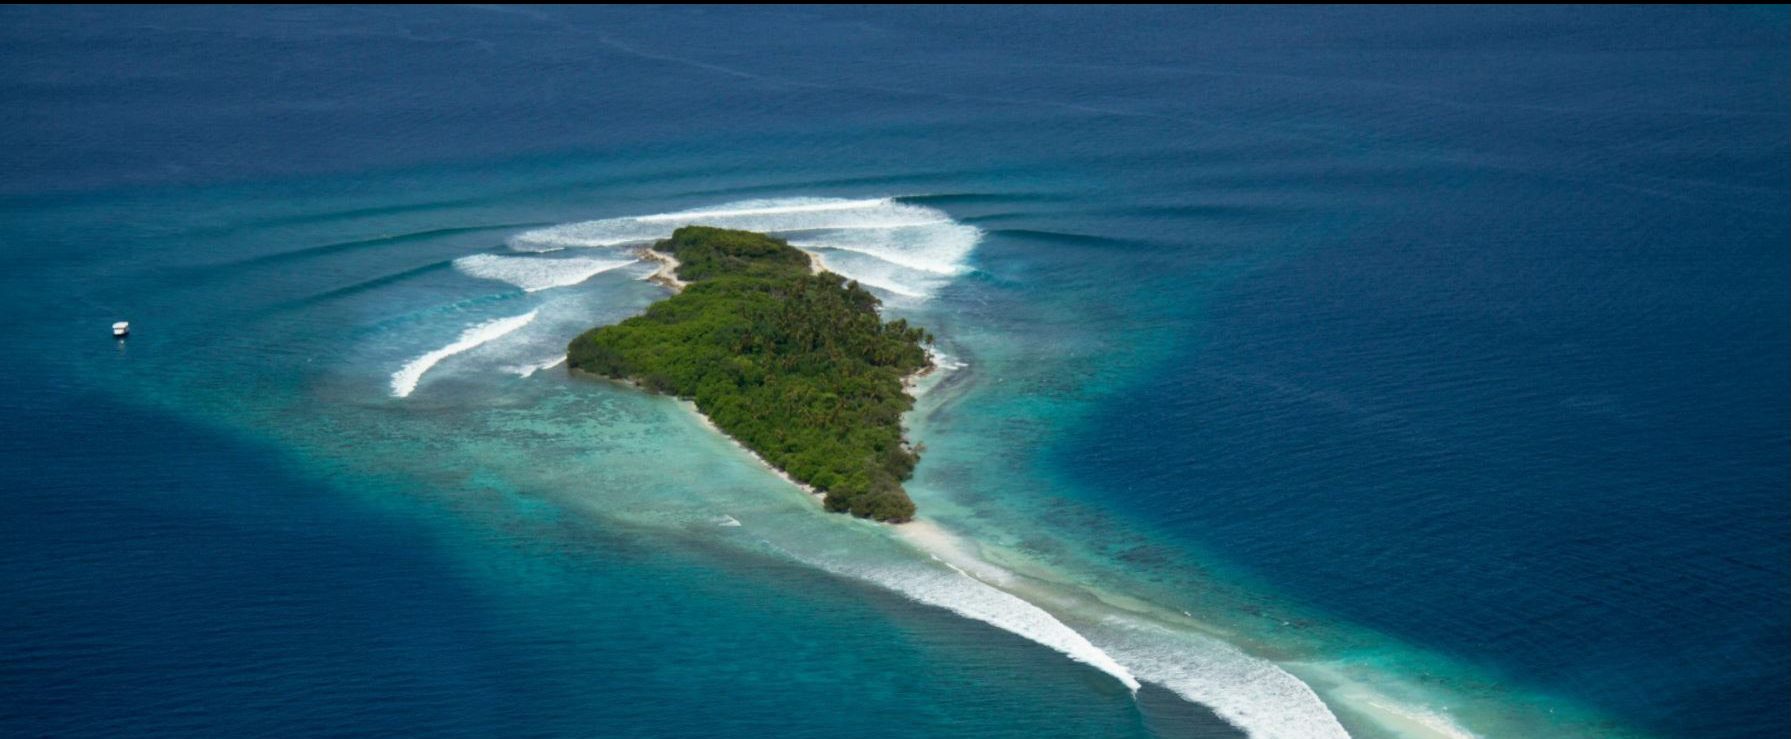 Sultans-island-maldives-surfing-e1512750921356.jpg